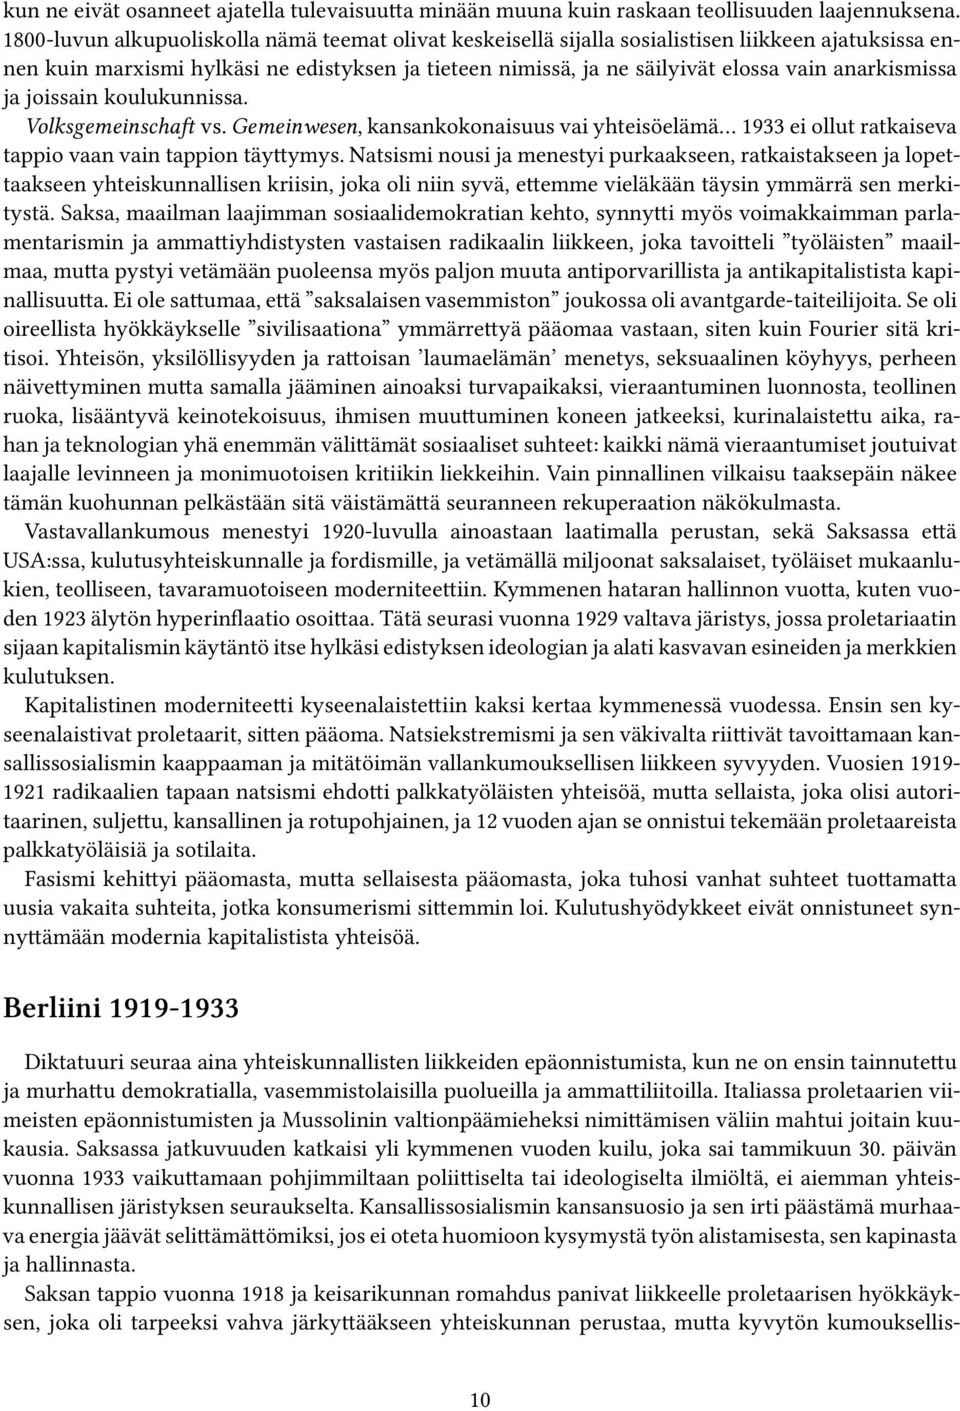 anarkismissa ja joissain koulukunnissa. Volksgemeinschaft vs. Gemeinwesen, kansankokonaisuus vai yhteisöelämä 1933 ei ollut ratkaiseva tappio vaan vain tappion täyttymys.